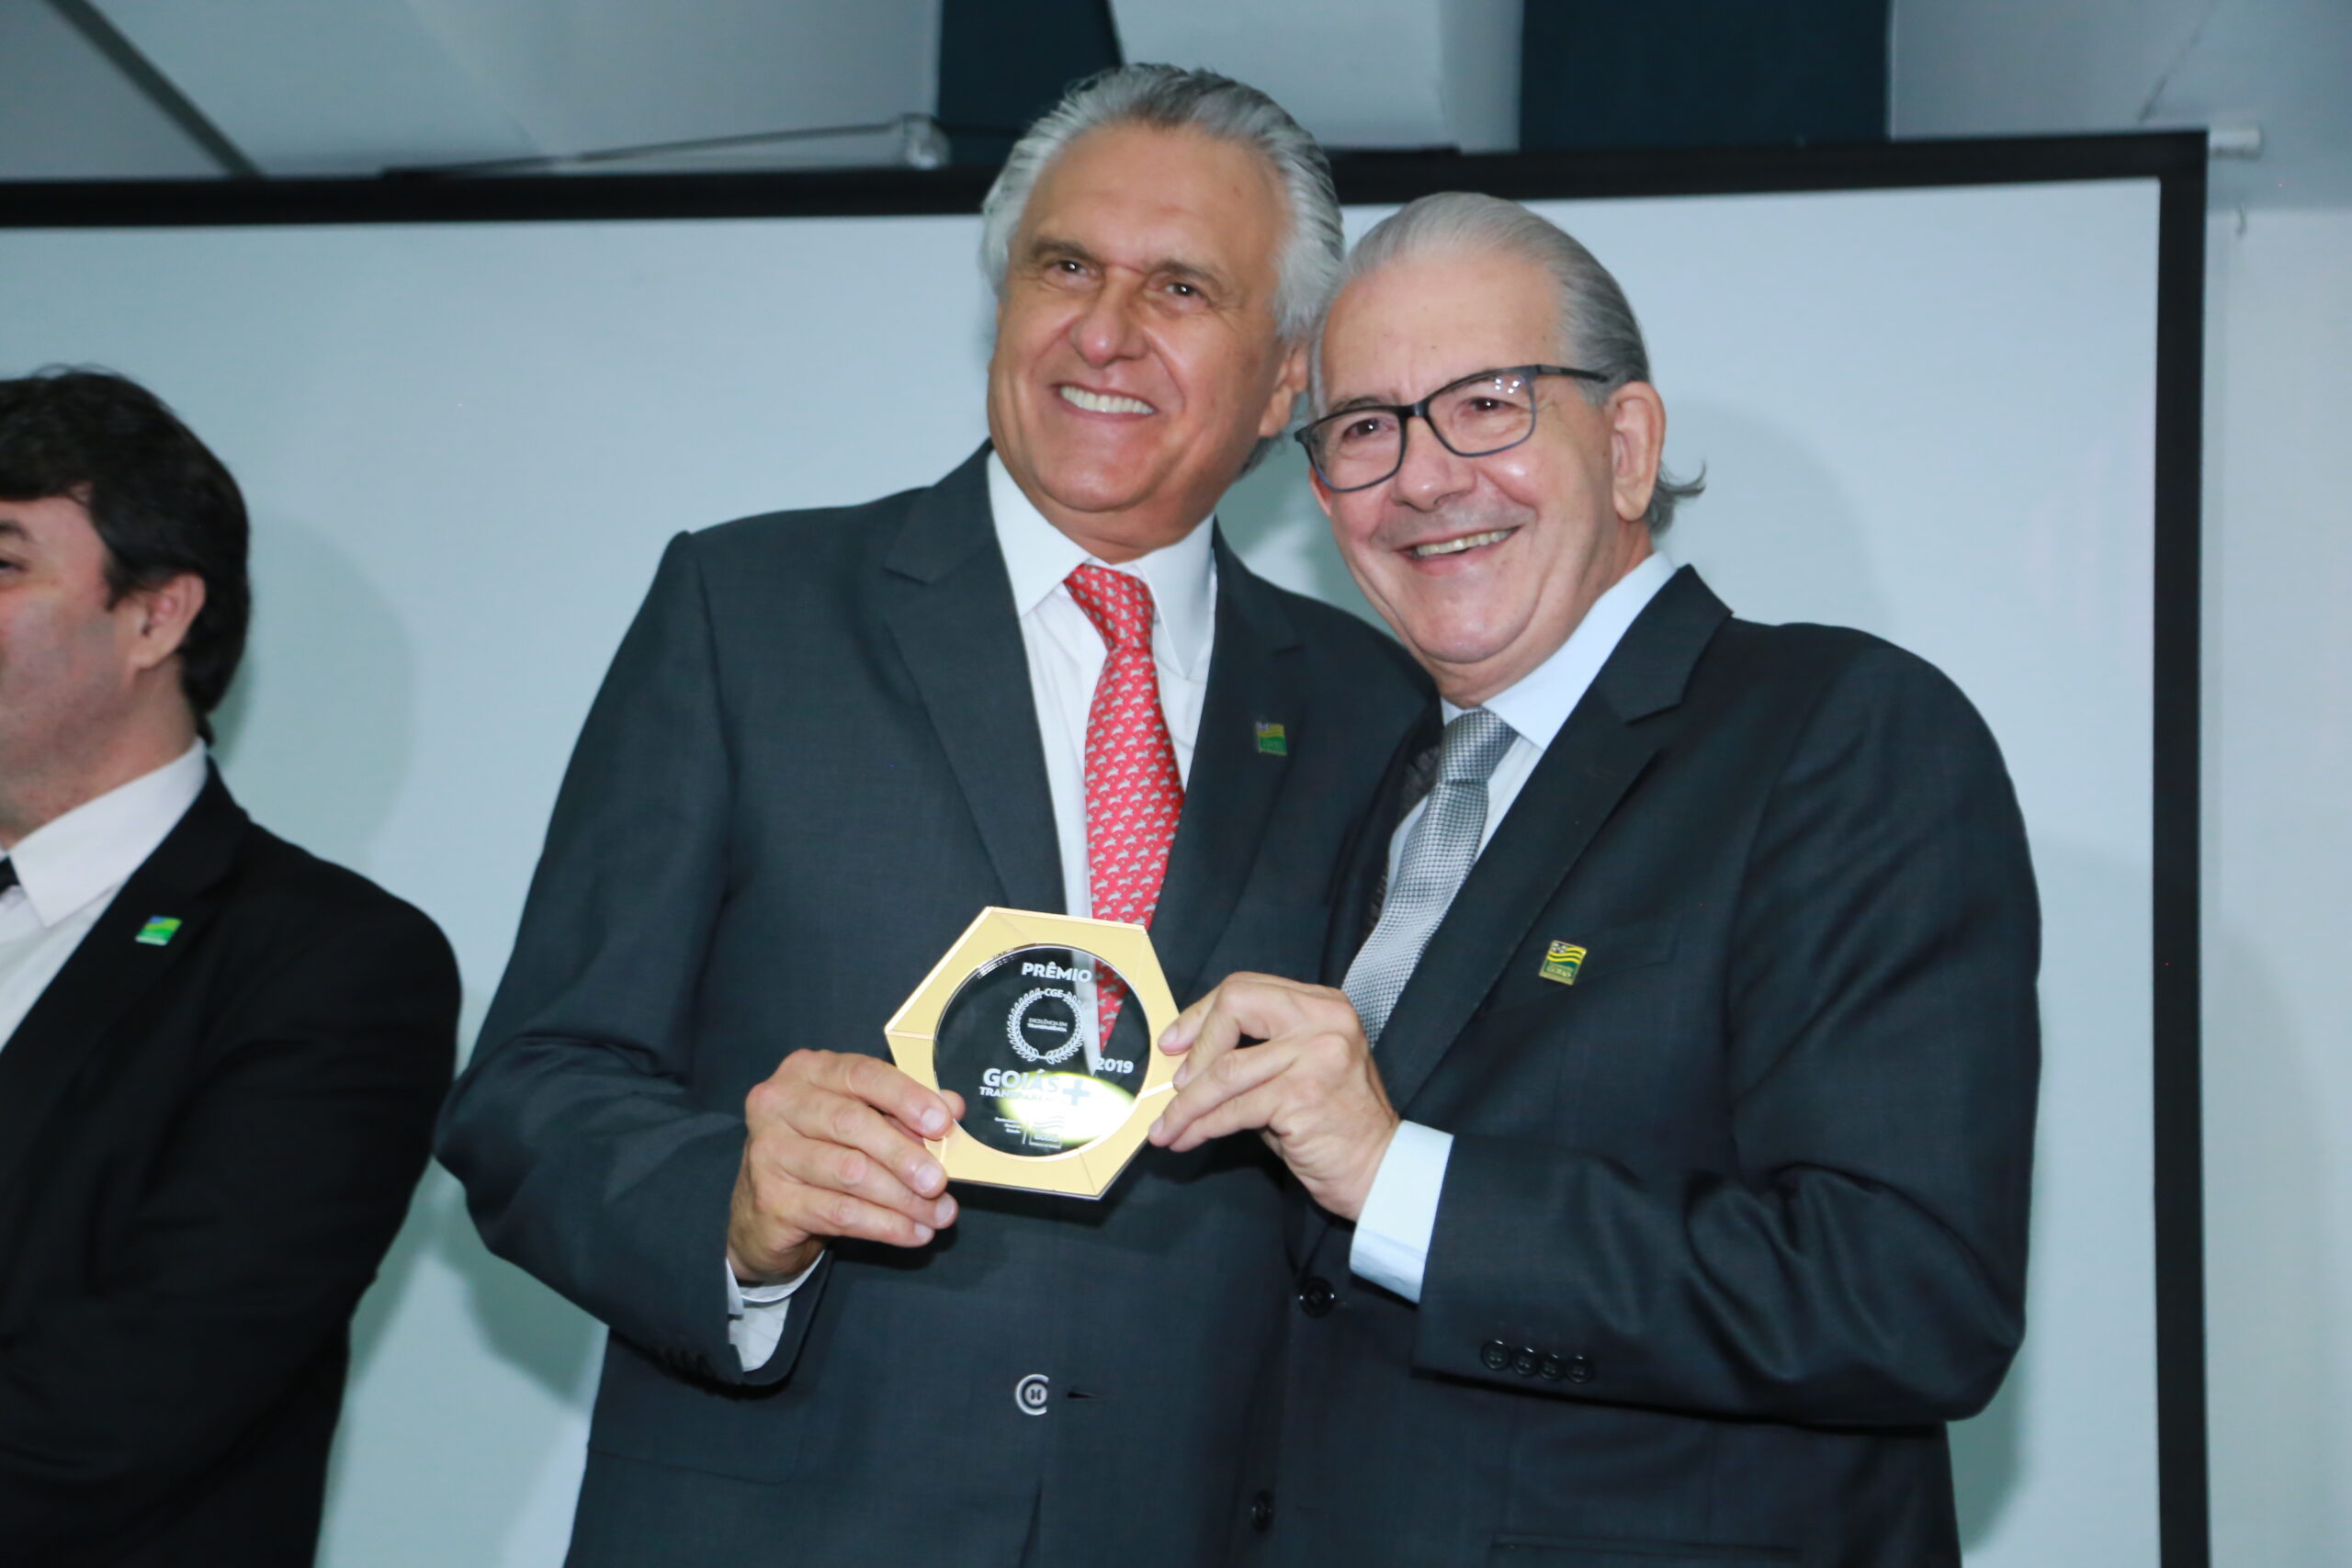 Agehab é ouro no Prêmio Goiás Mais Transparente